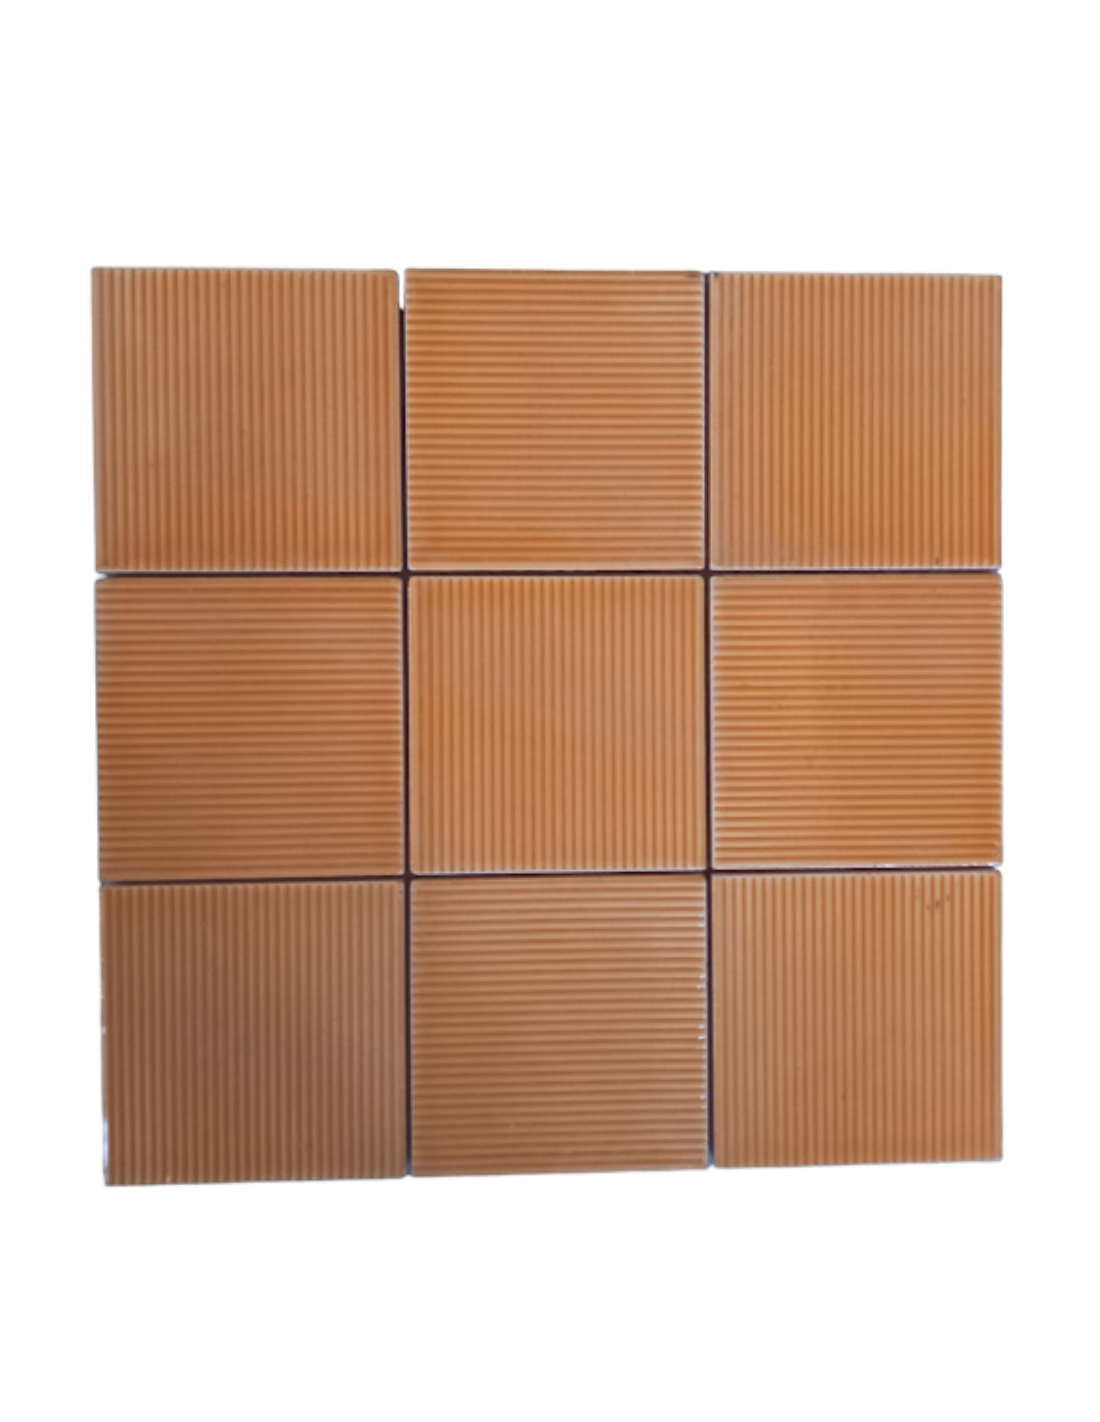 Marco de madera para fotografía 30 x 30, marrón, (Contemporary Brown), 30x30